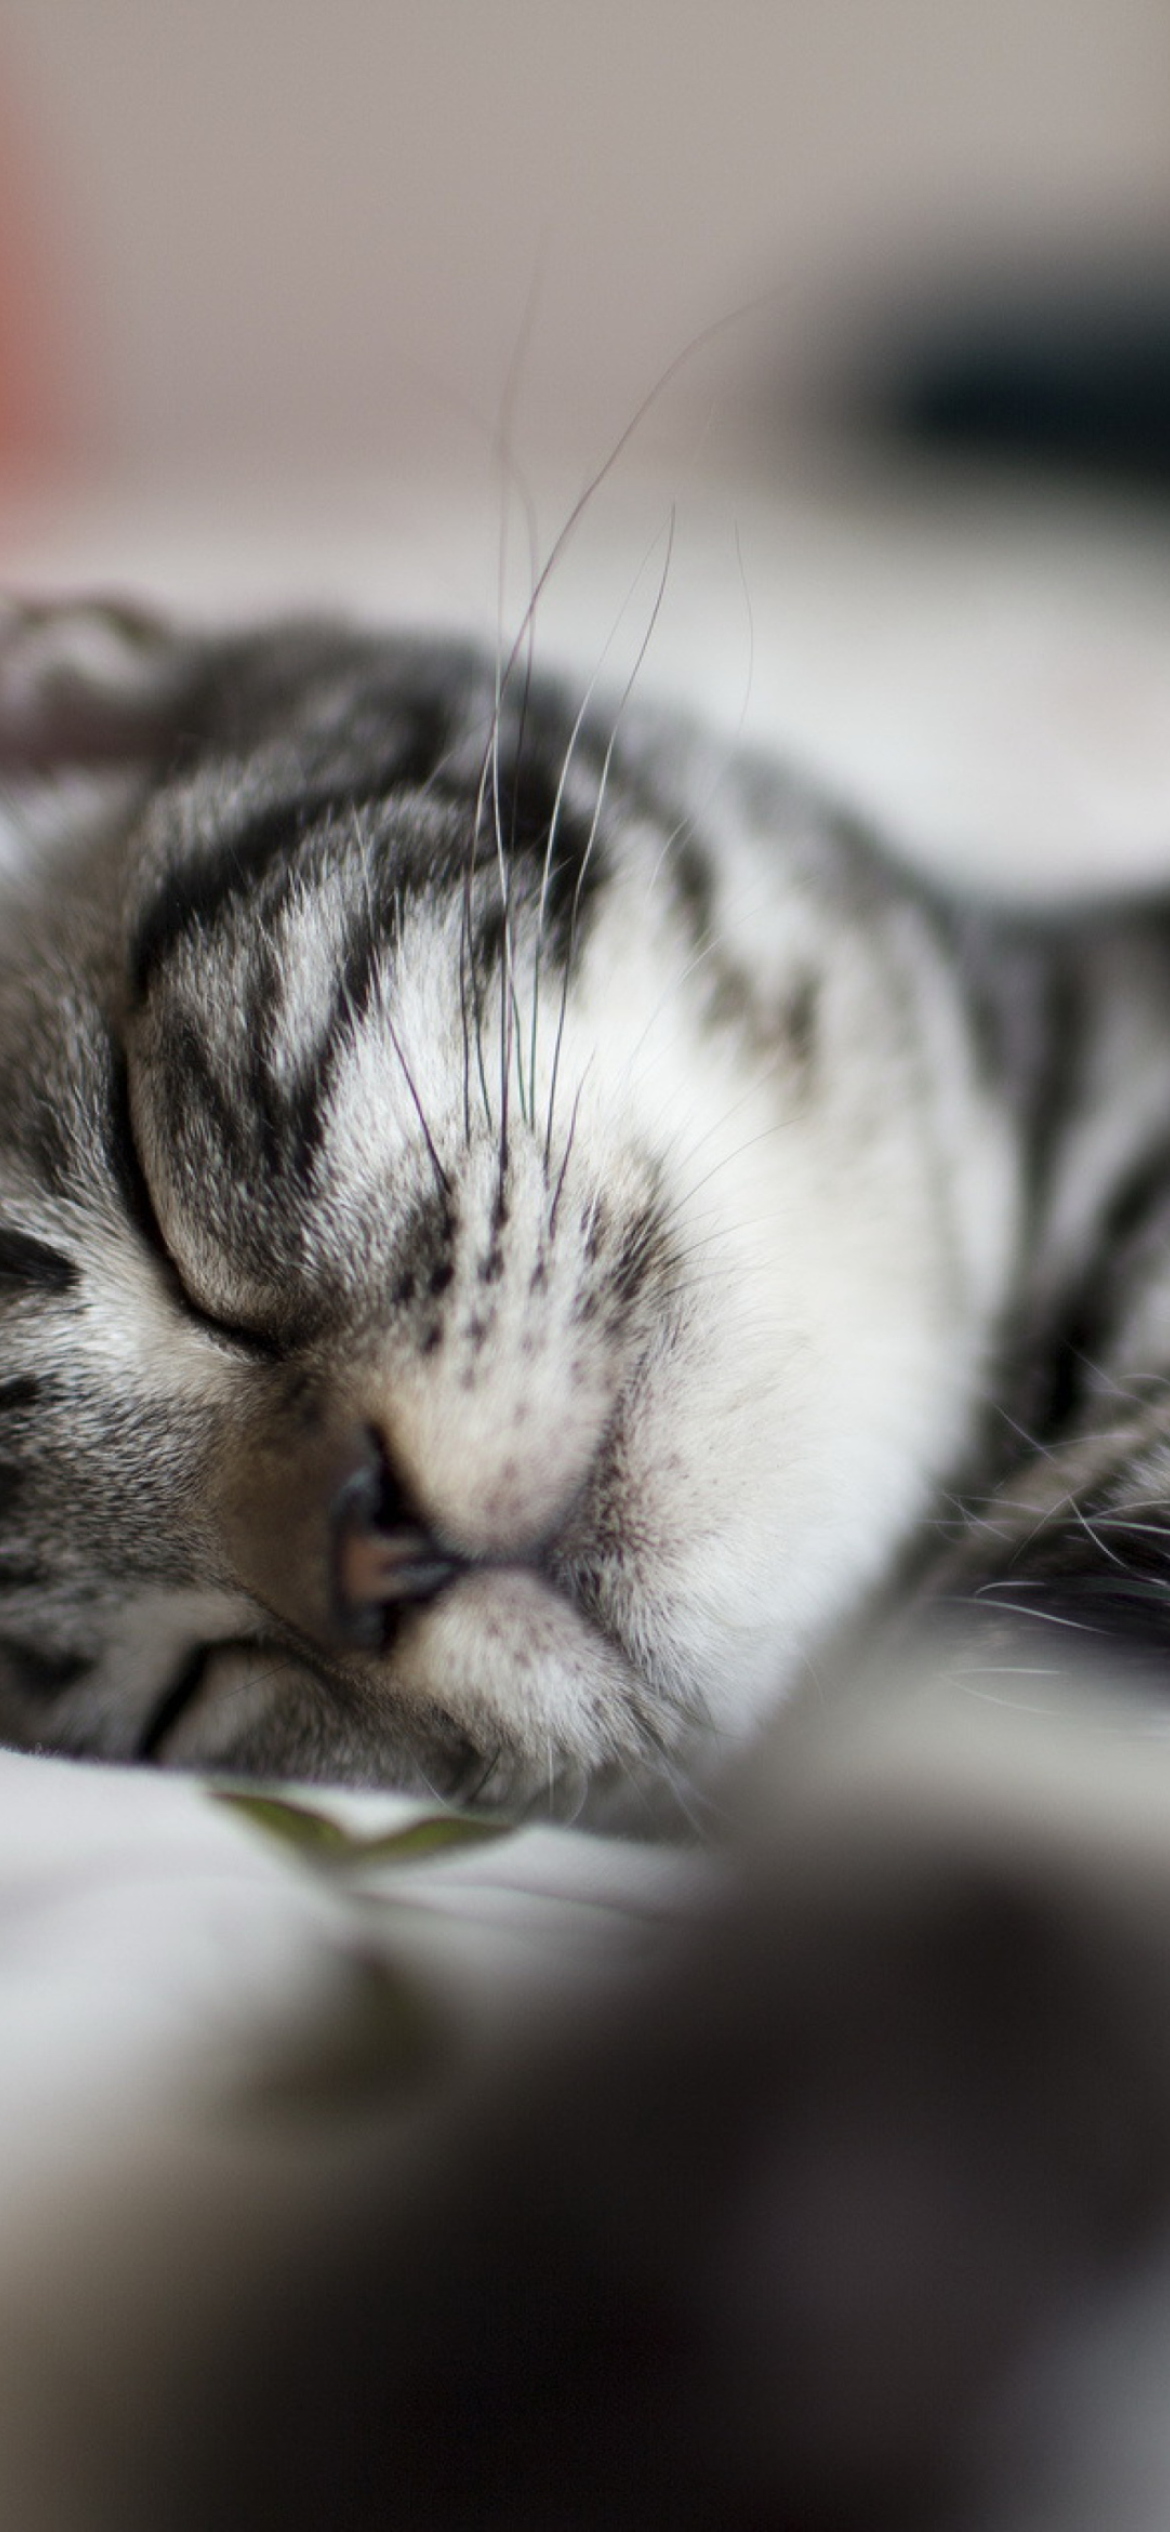 Little Striped Grey Kitten Sleeping wallpaper 1170x2532